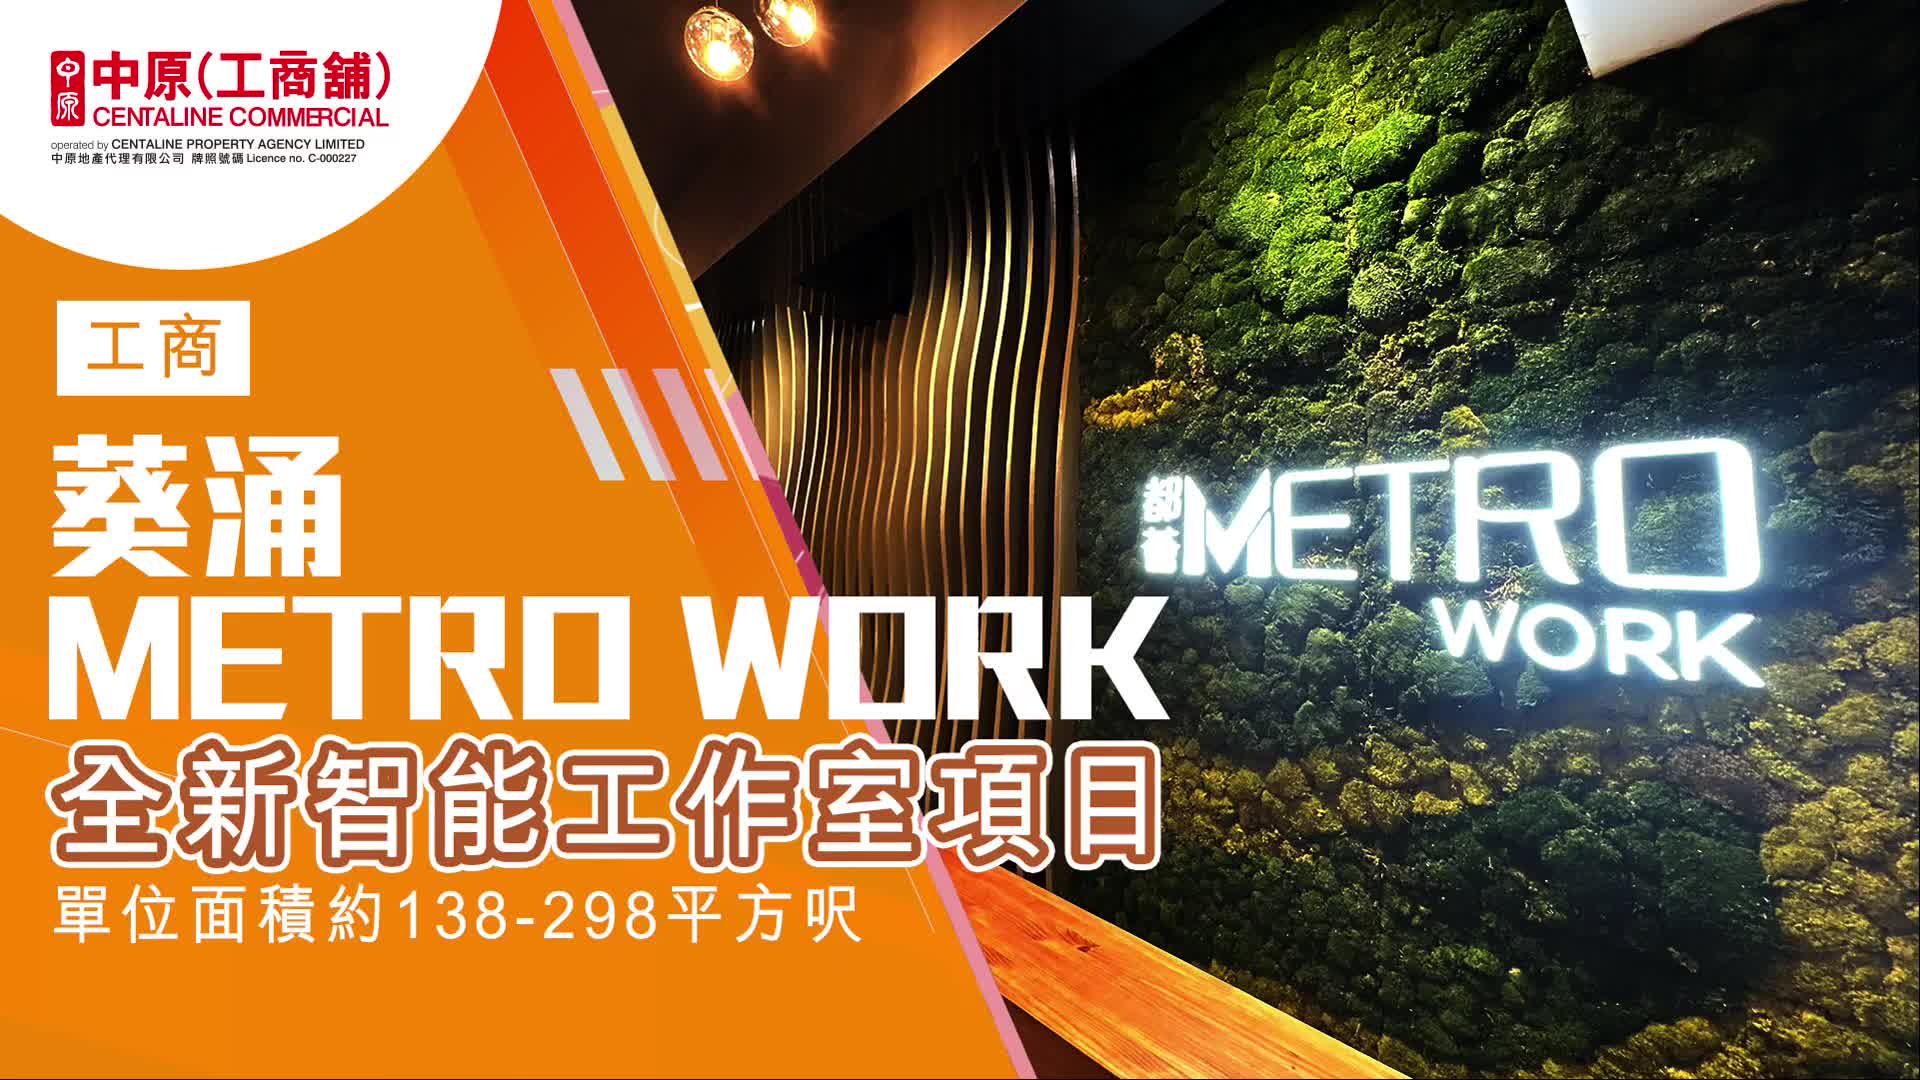 筍盤推介 都薈Metro Work 葵涌 葵昌路90-98號